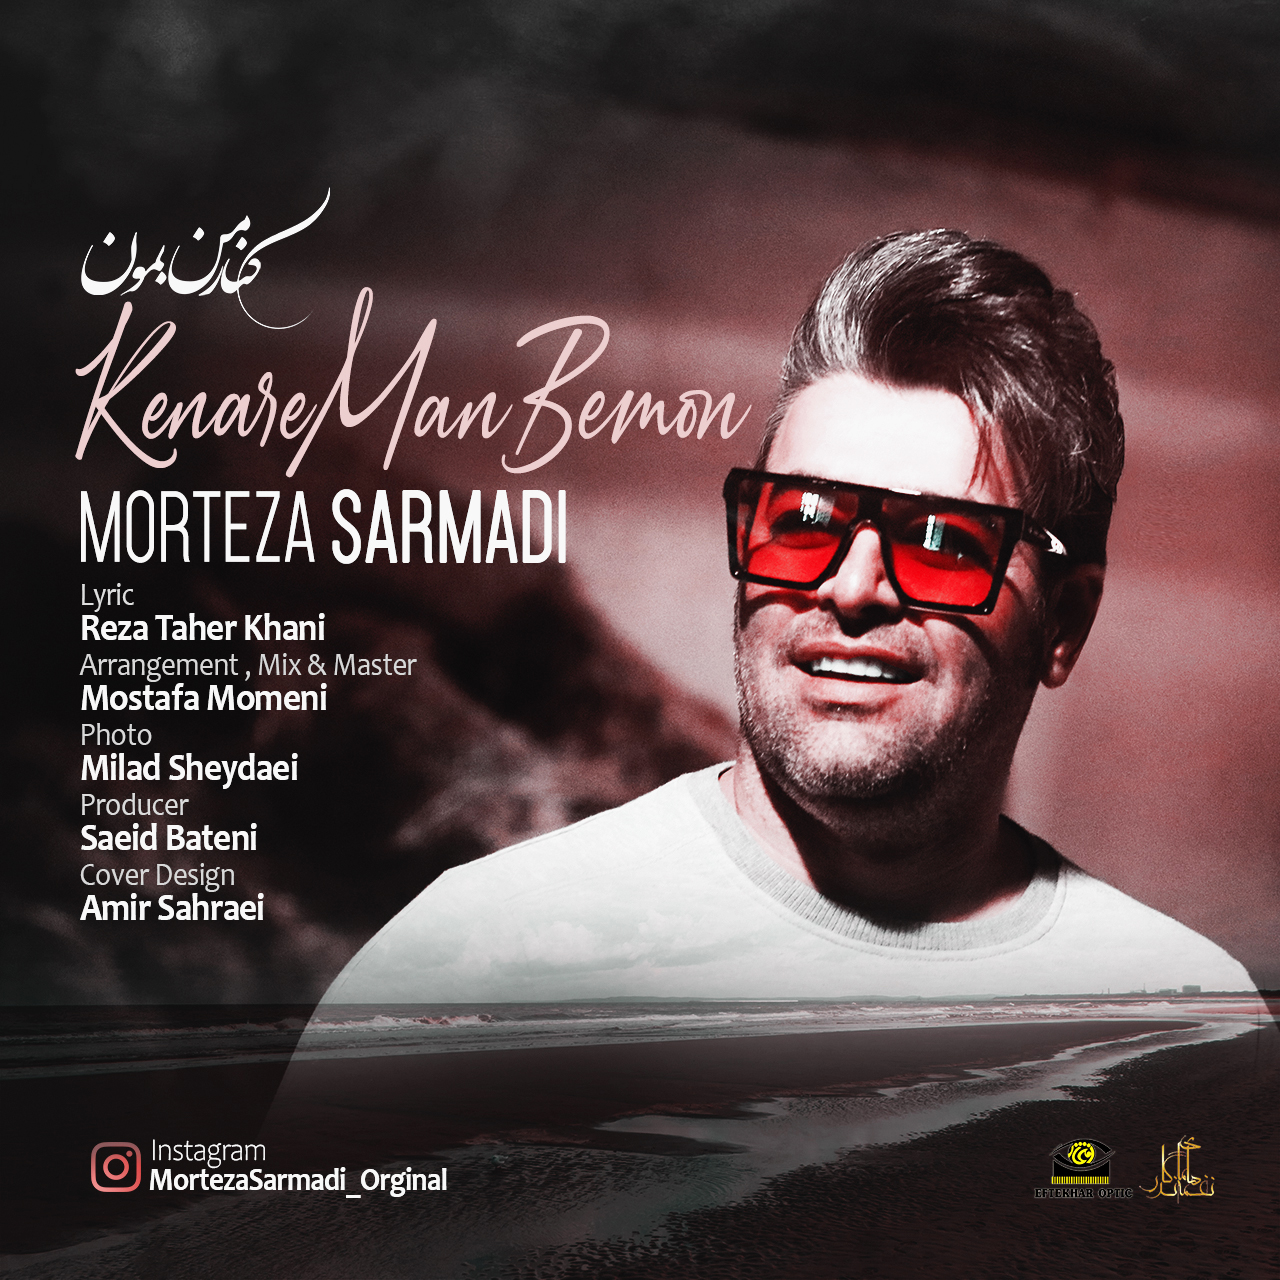  دانلود آهنگ جدید مرتضی سرمدی - کنار من بمون | Download New Music By Morteza Sarmadi - Kenare Man Bemon